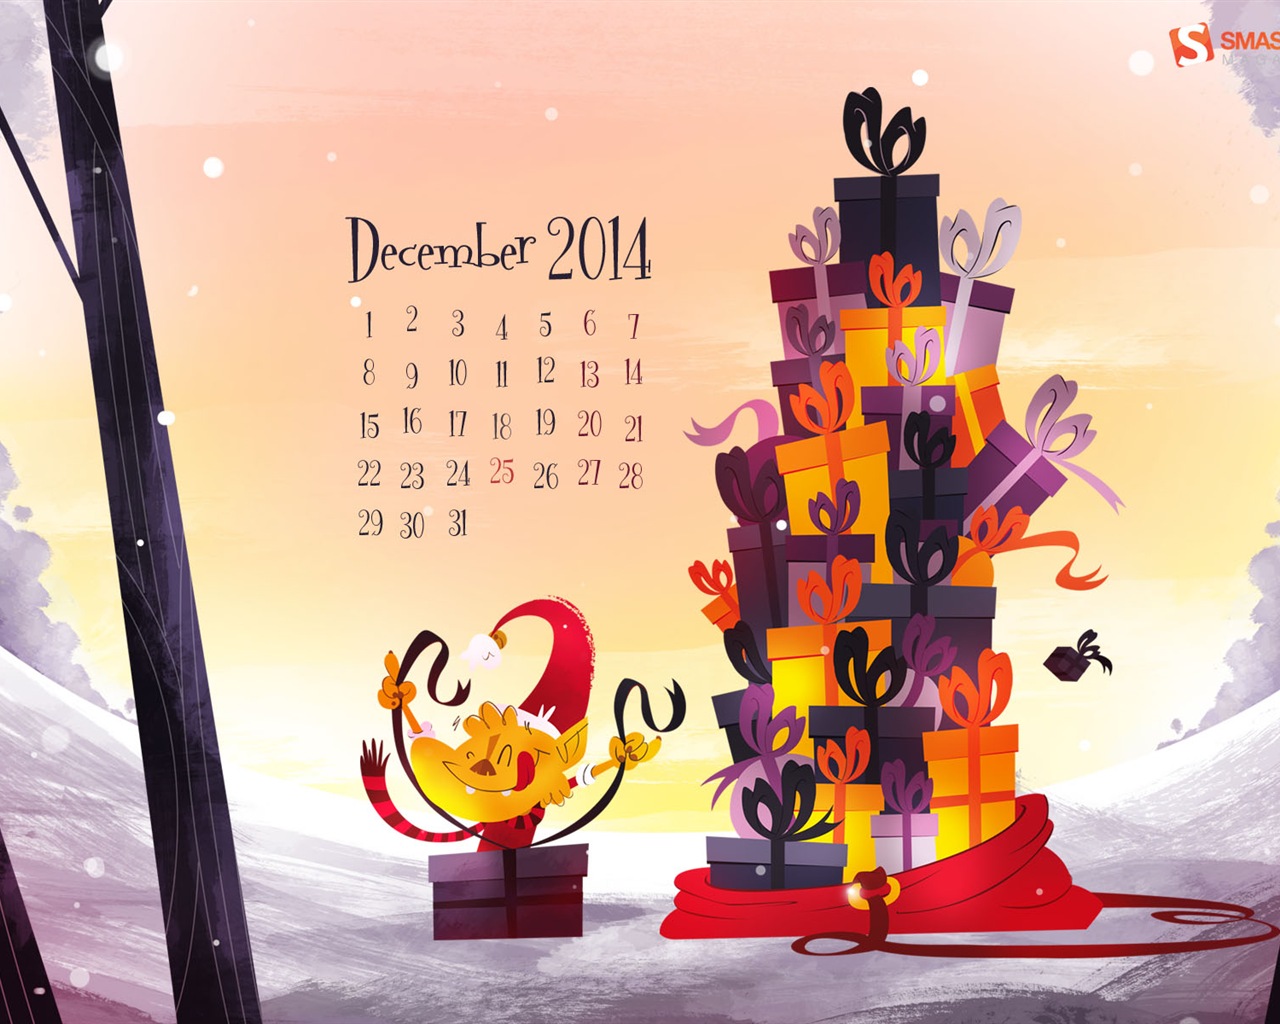 December 2014 Calendar wallpaper (2) #1 - 1280x1024